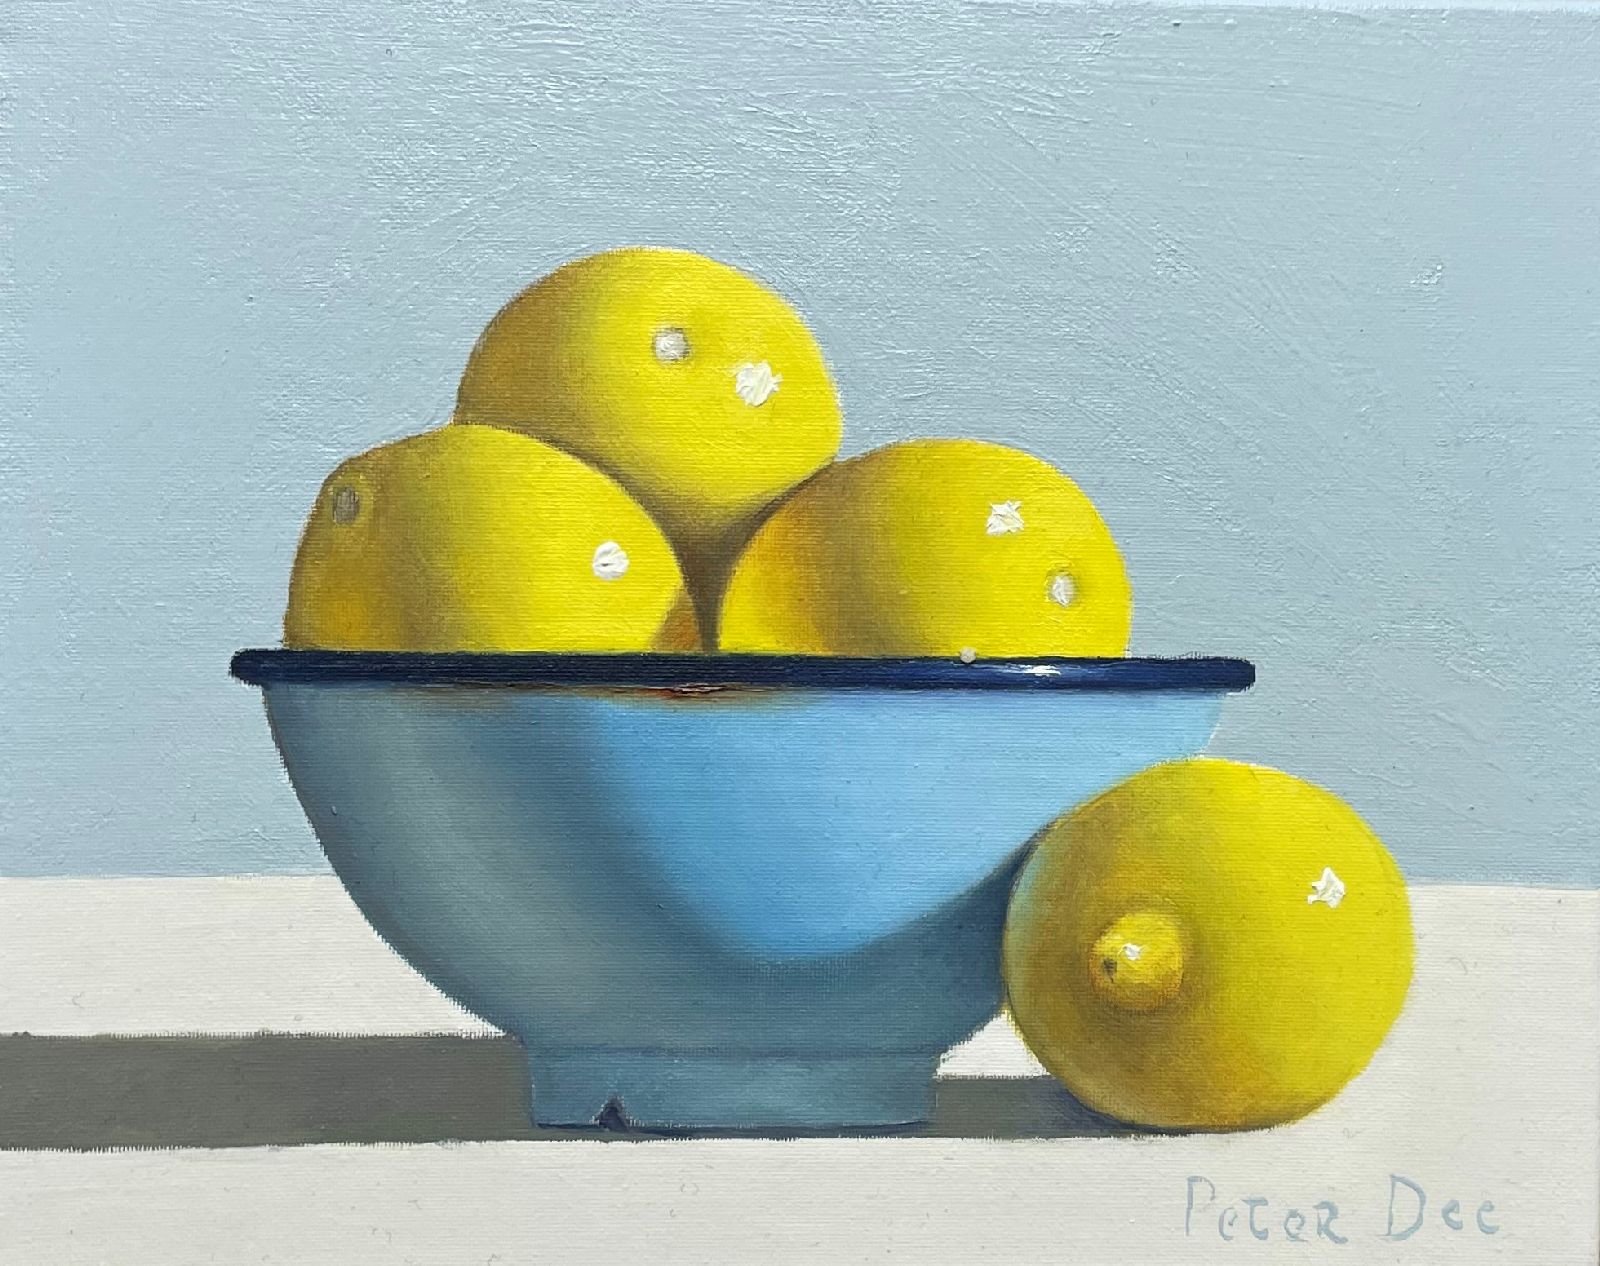 Peter Dee - Bowl Lemons